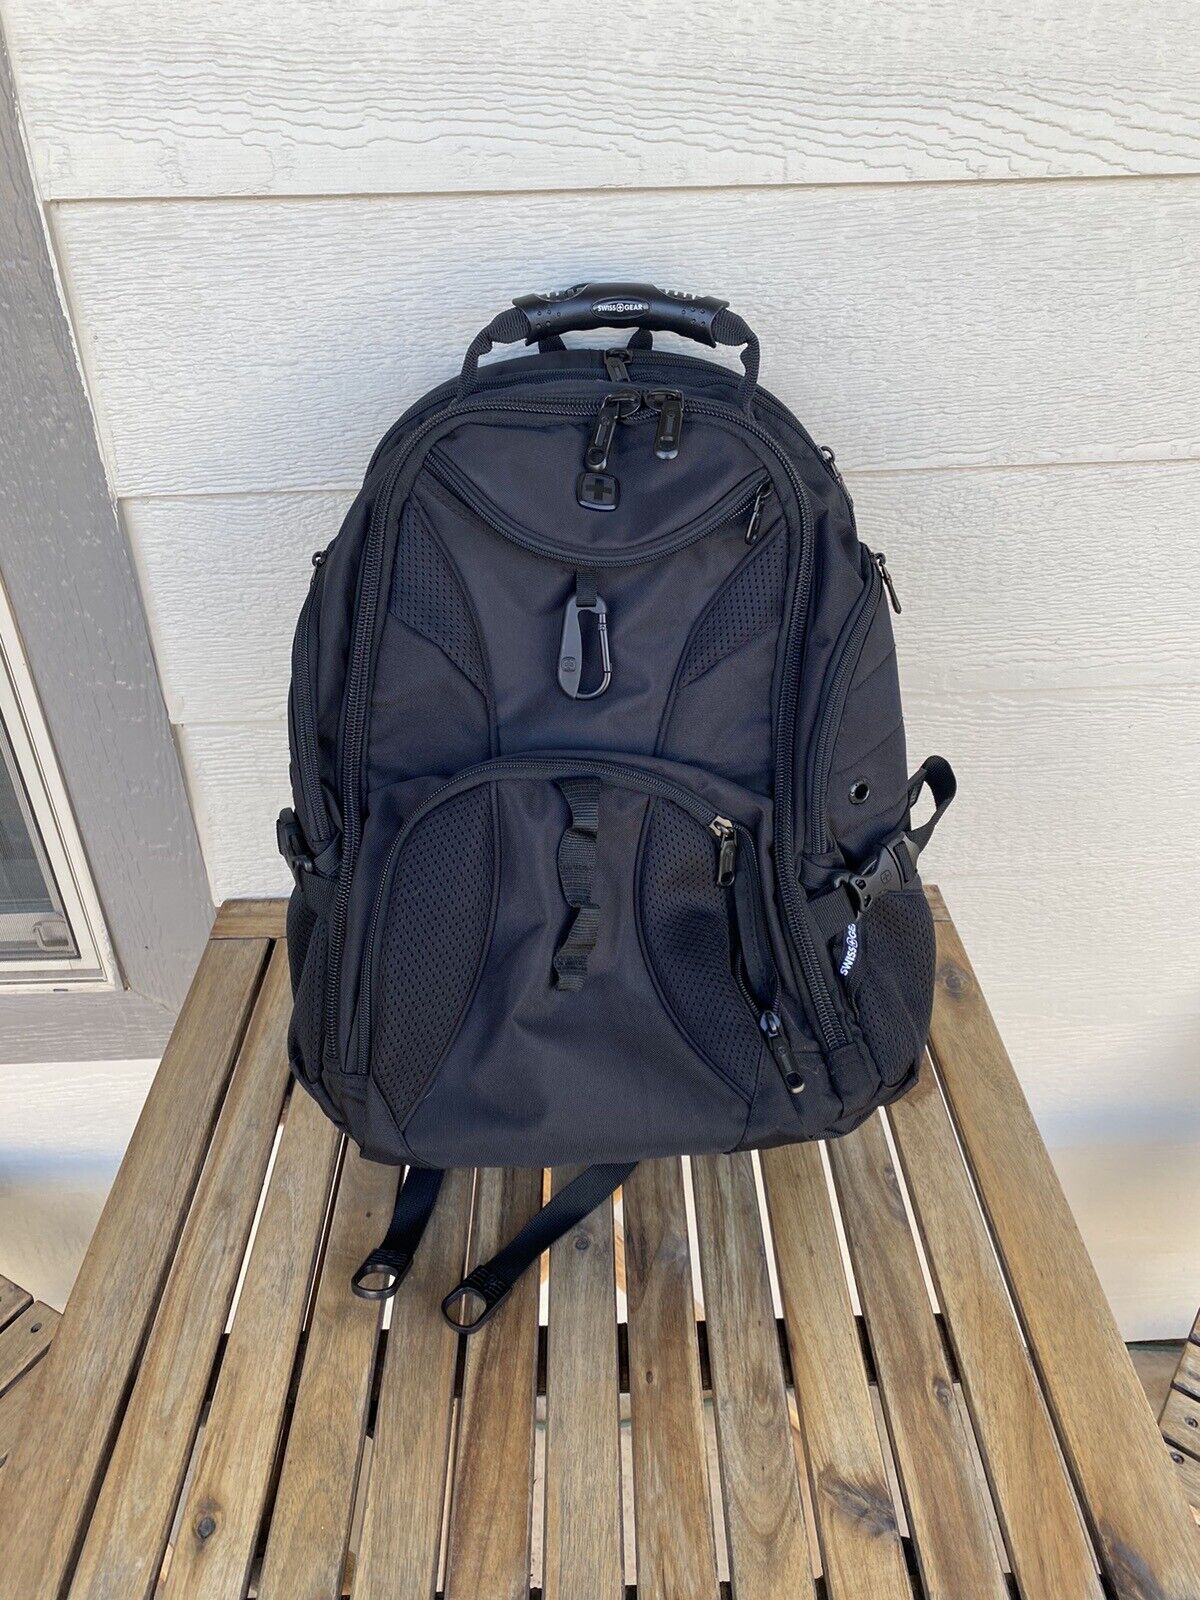 SWISSGEAR Travel Gear Laptop Backpack - Black